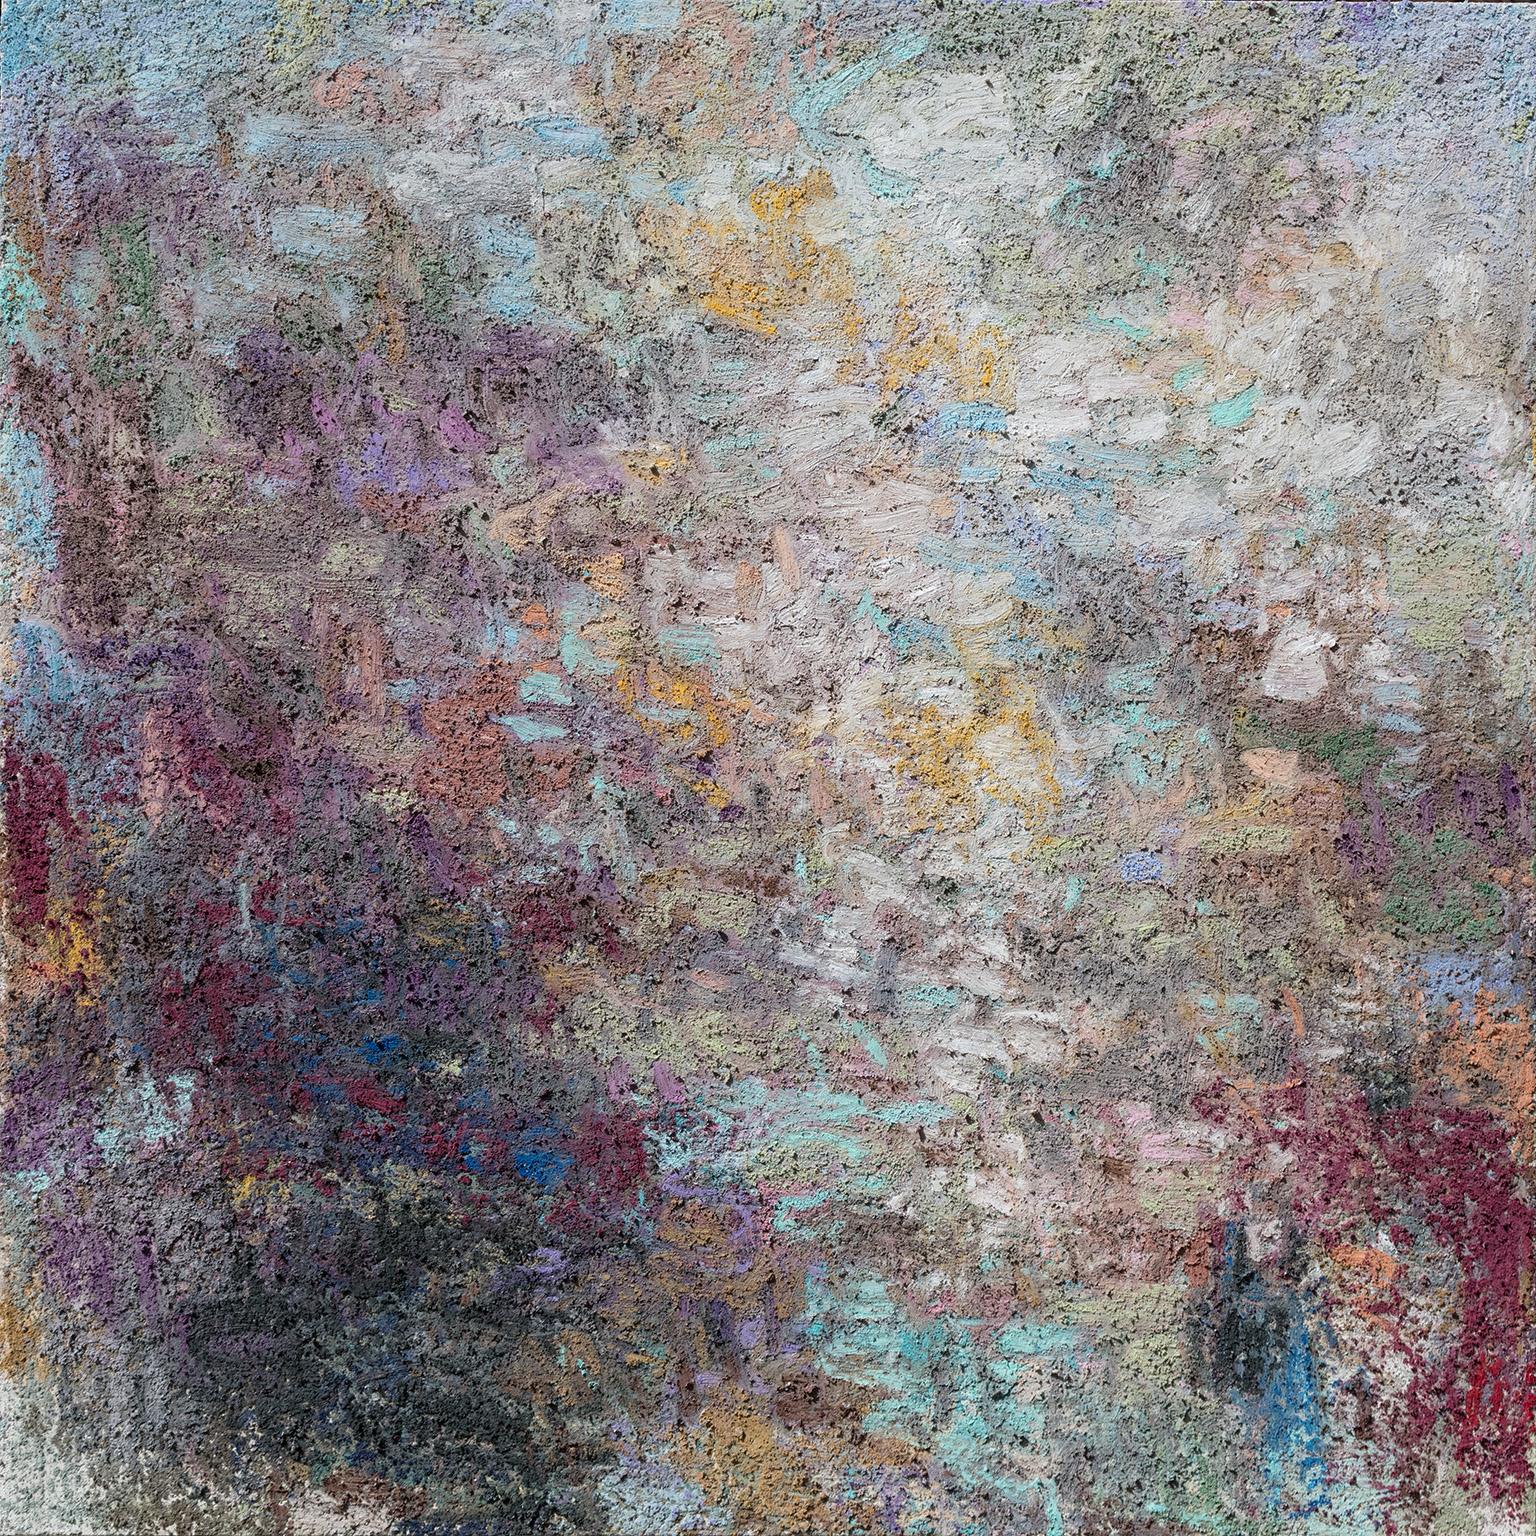 Ohne Titel V - Abstraktes Gemälde mit dicken Blau-, Lila- und Rot- Impasto-Farben